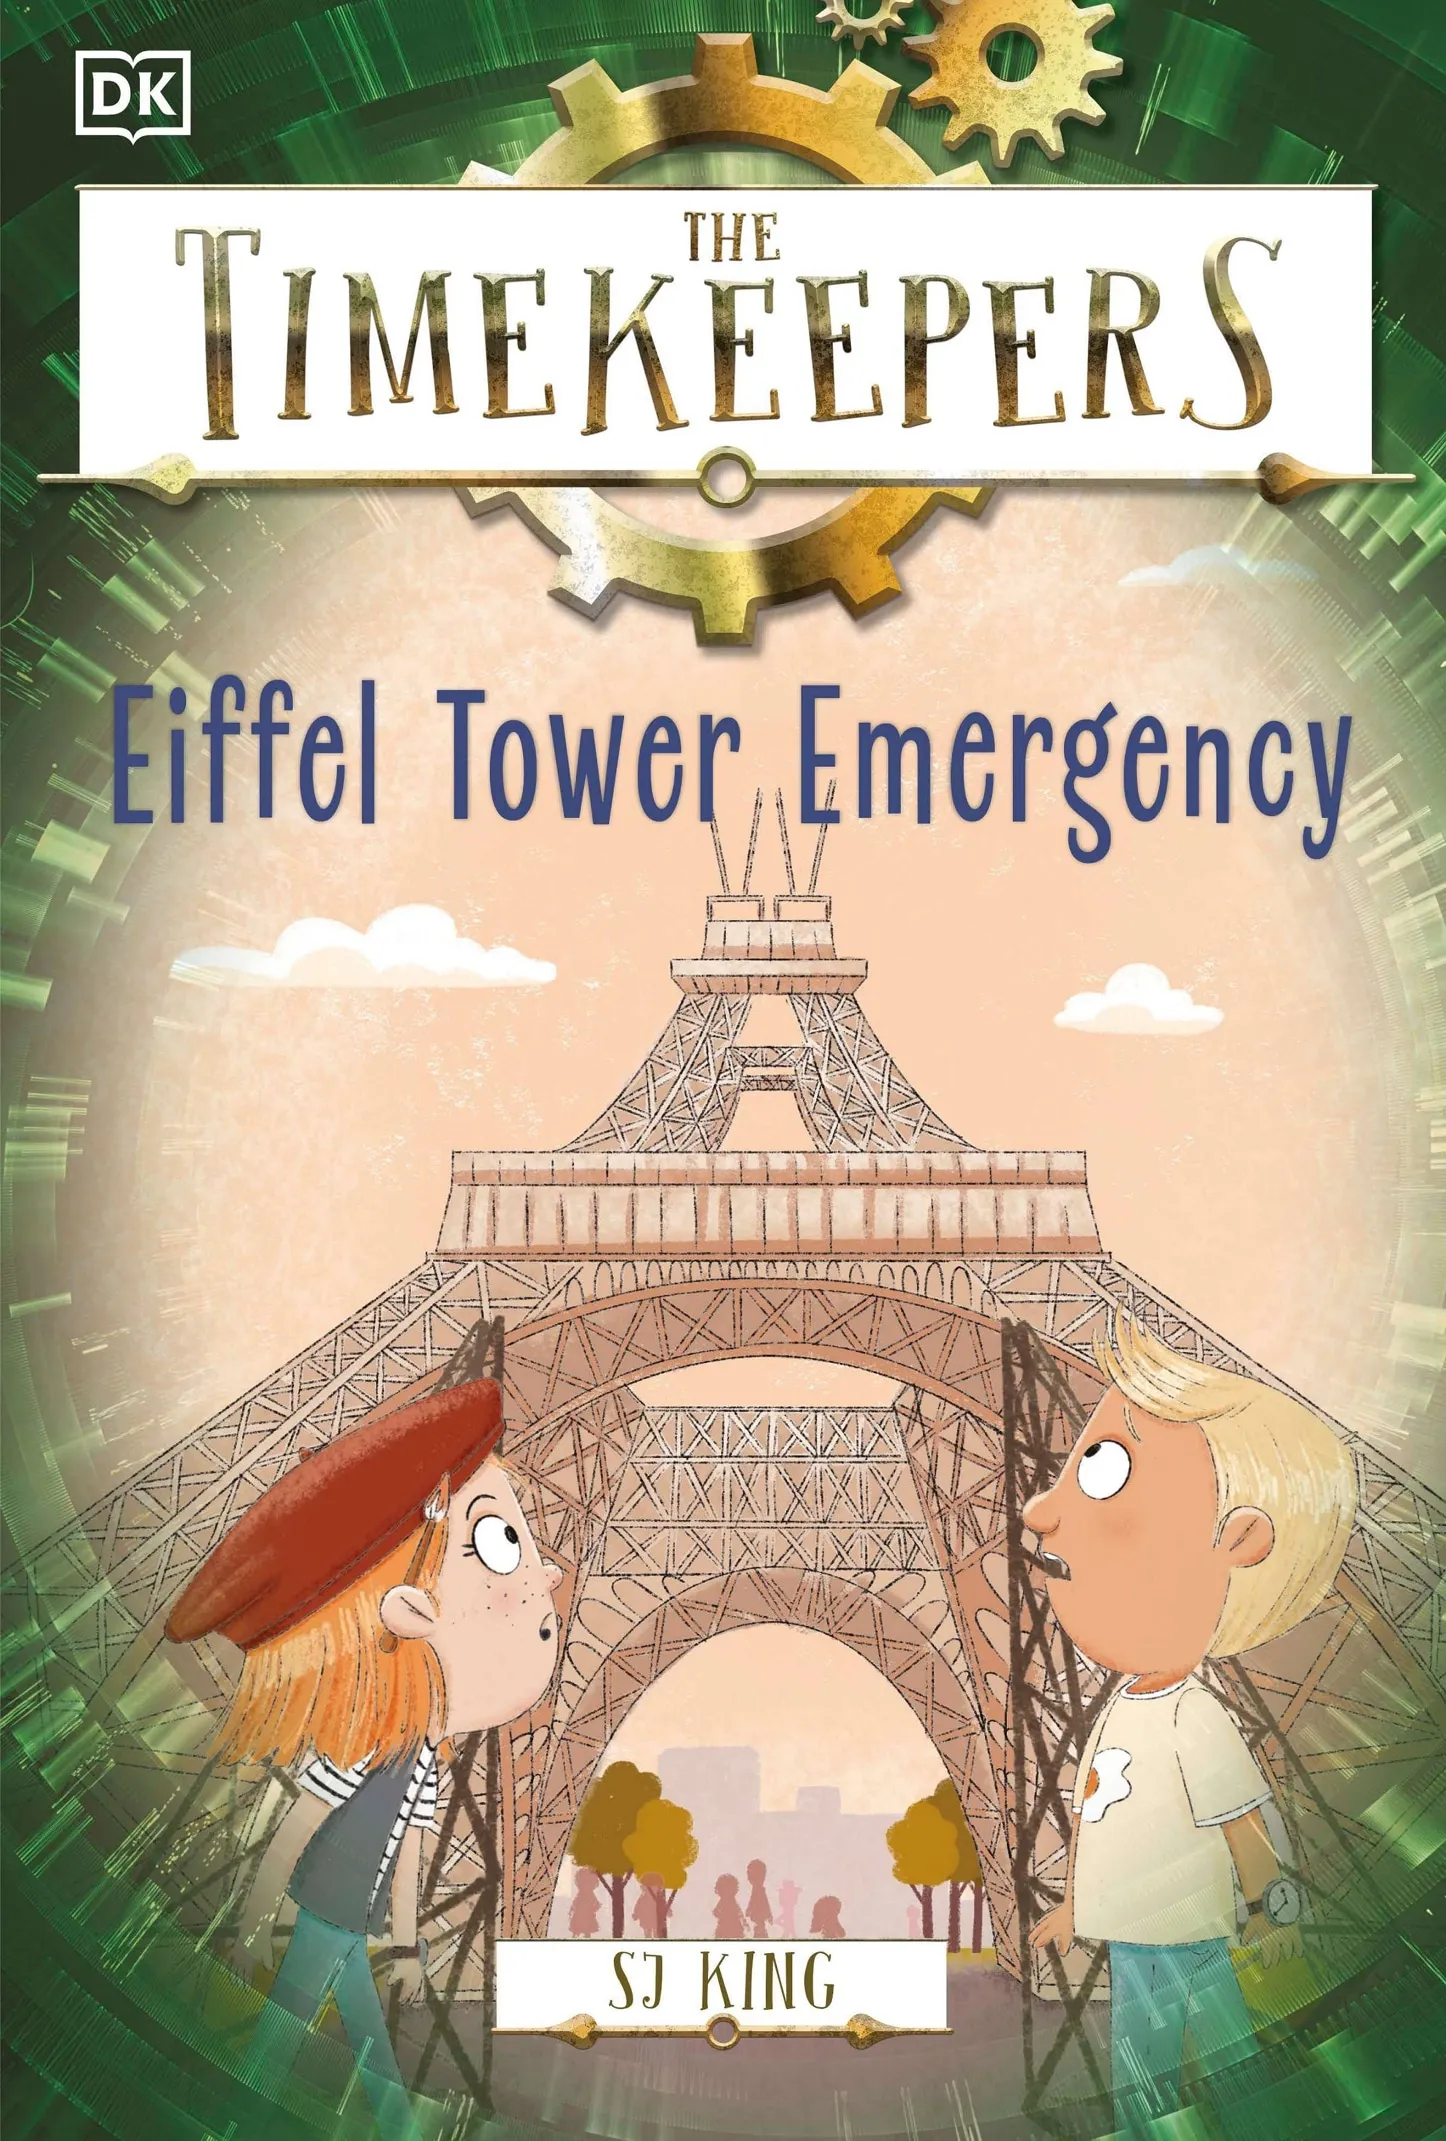 The Timekeepers: Eiffel Tower Emergency (Timekeepers)